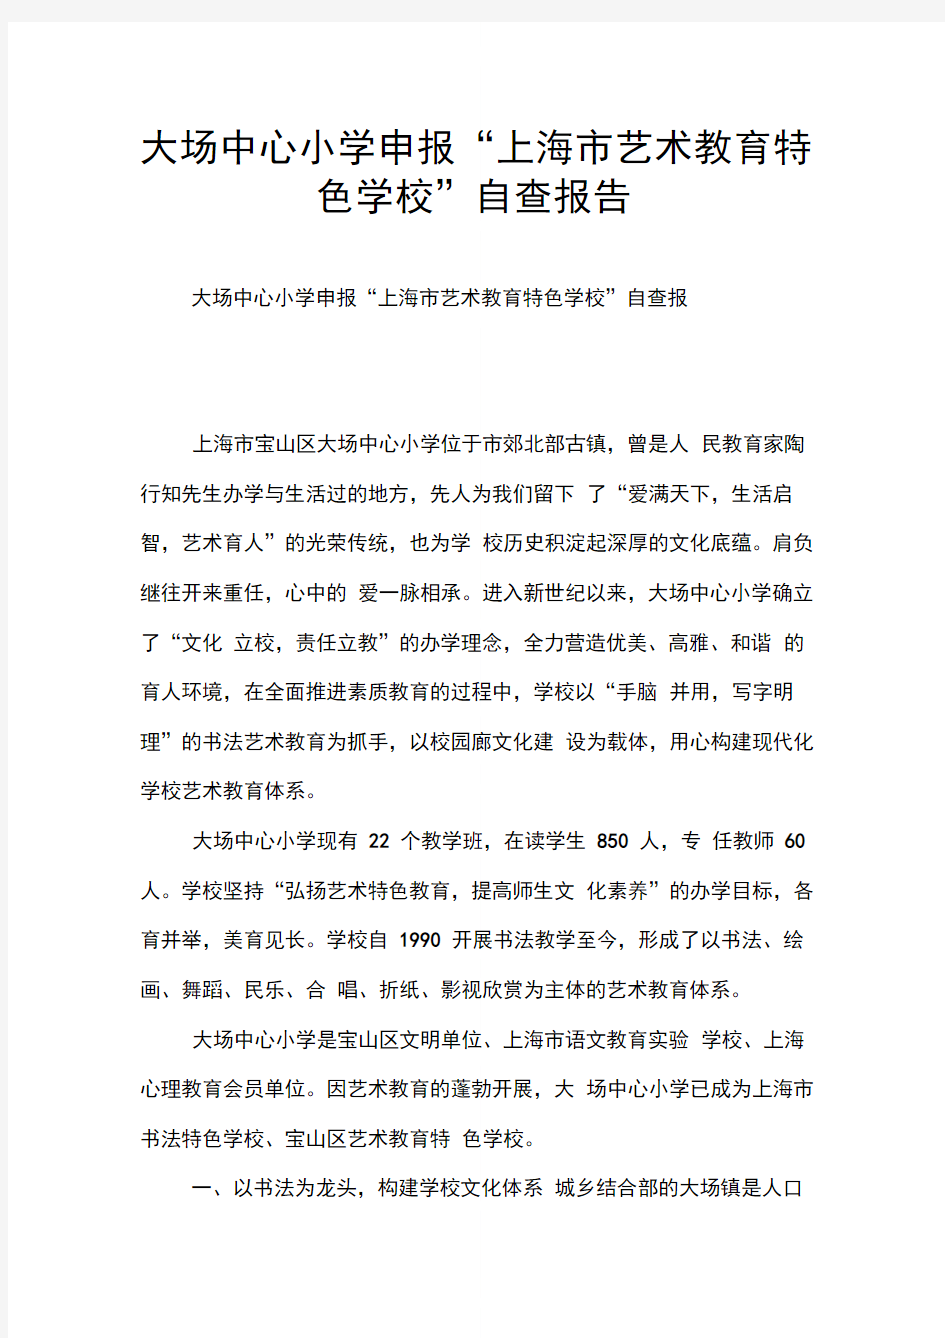 大场中心小学申报“上海市艺术教育特色学校”自查报告